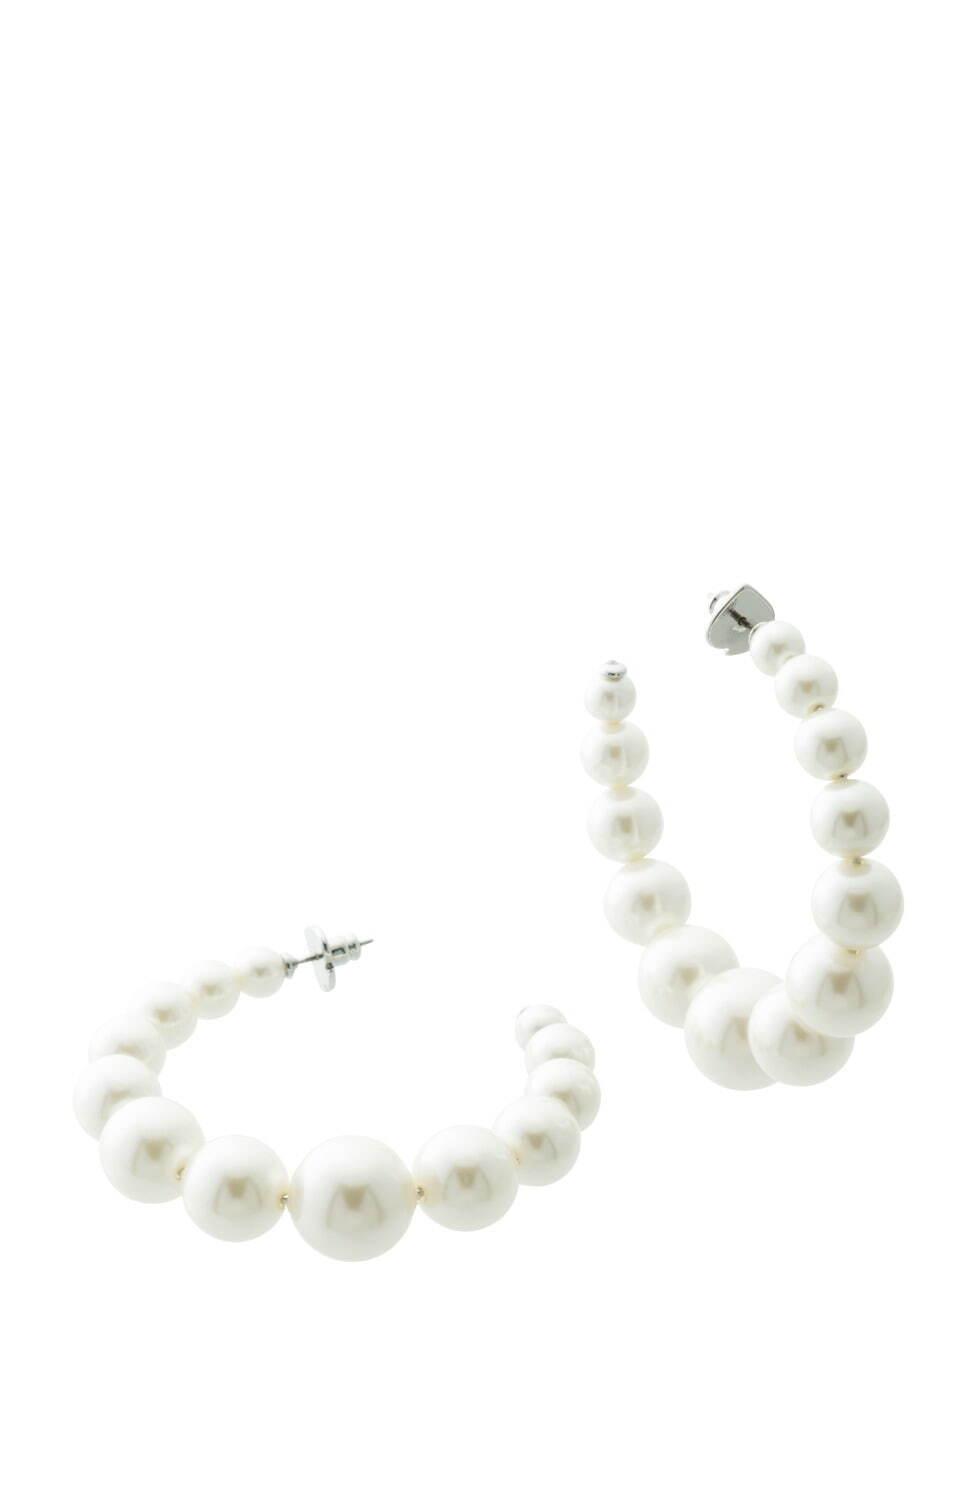 pearls, please hoops 14,300円